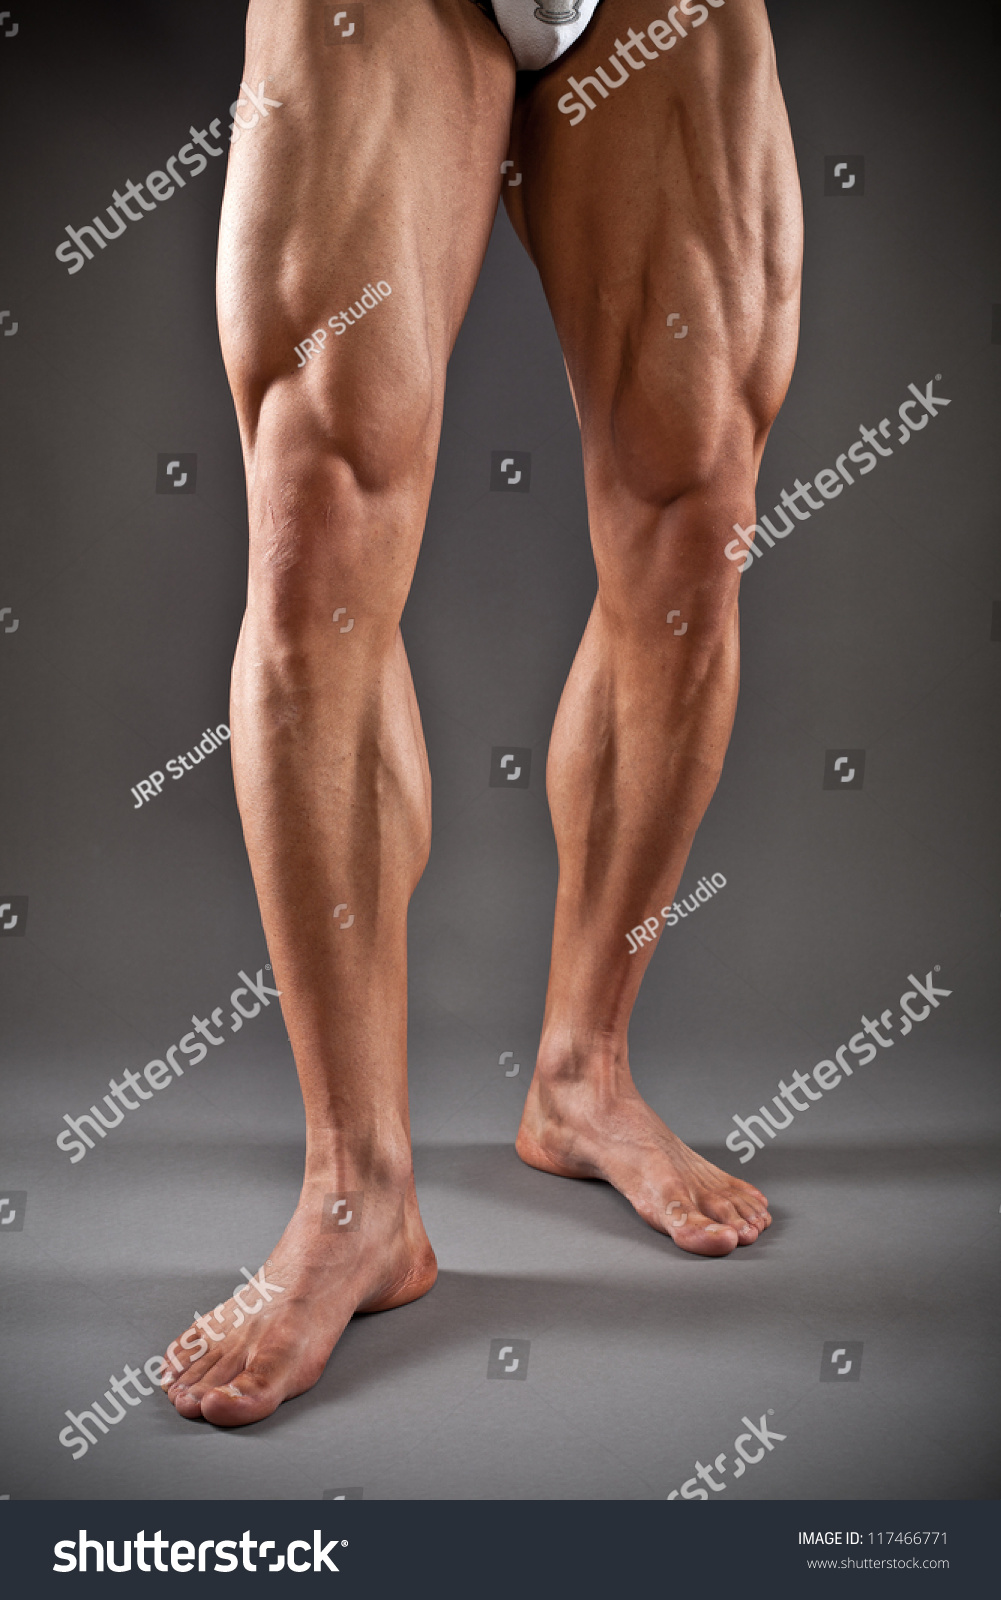 Muscular Male Legs Stock Photo 117466771 - Shutterstock